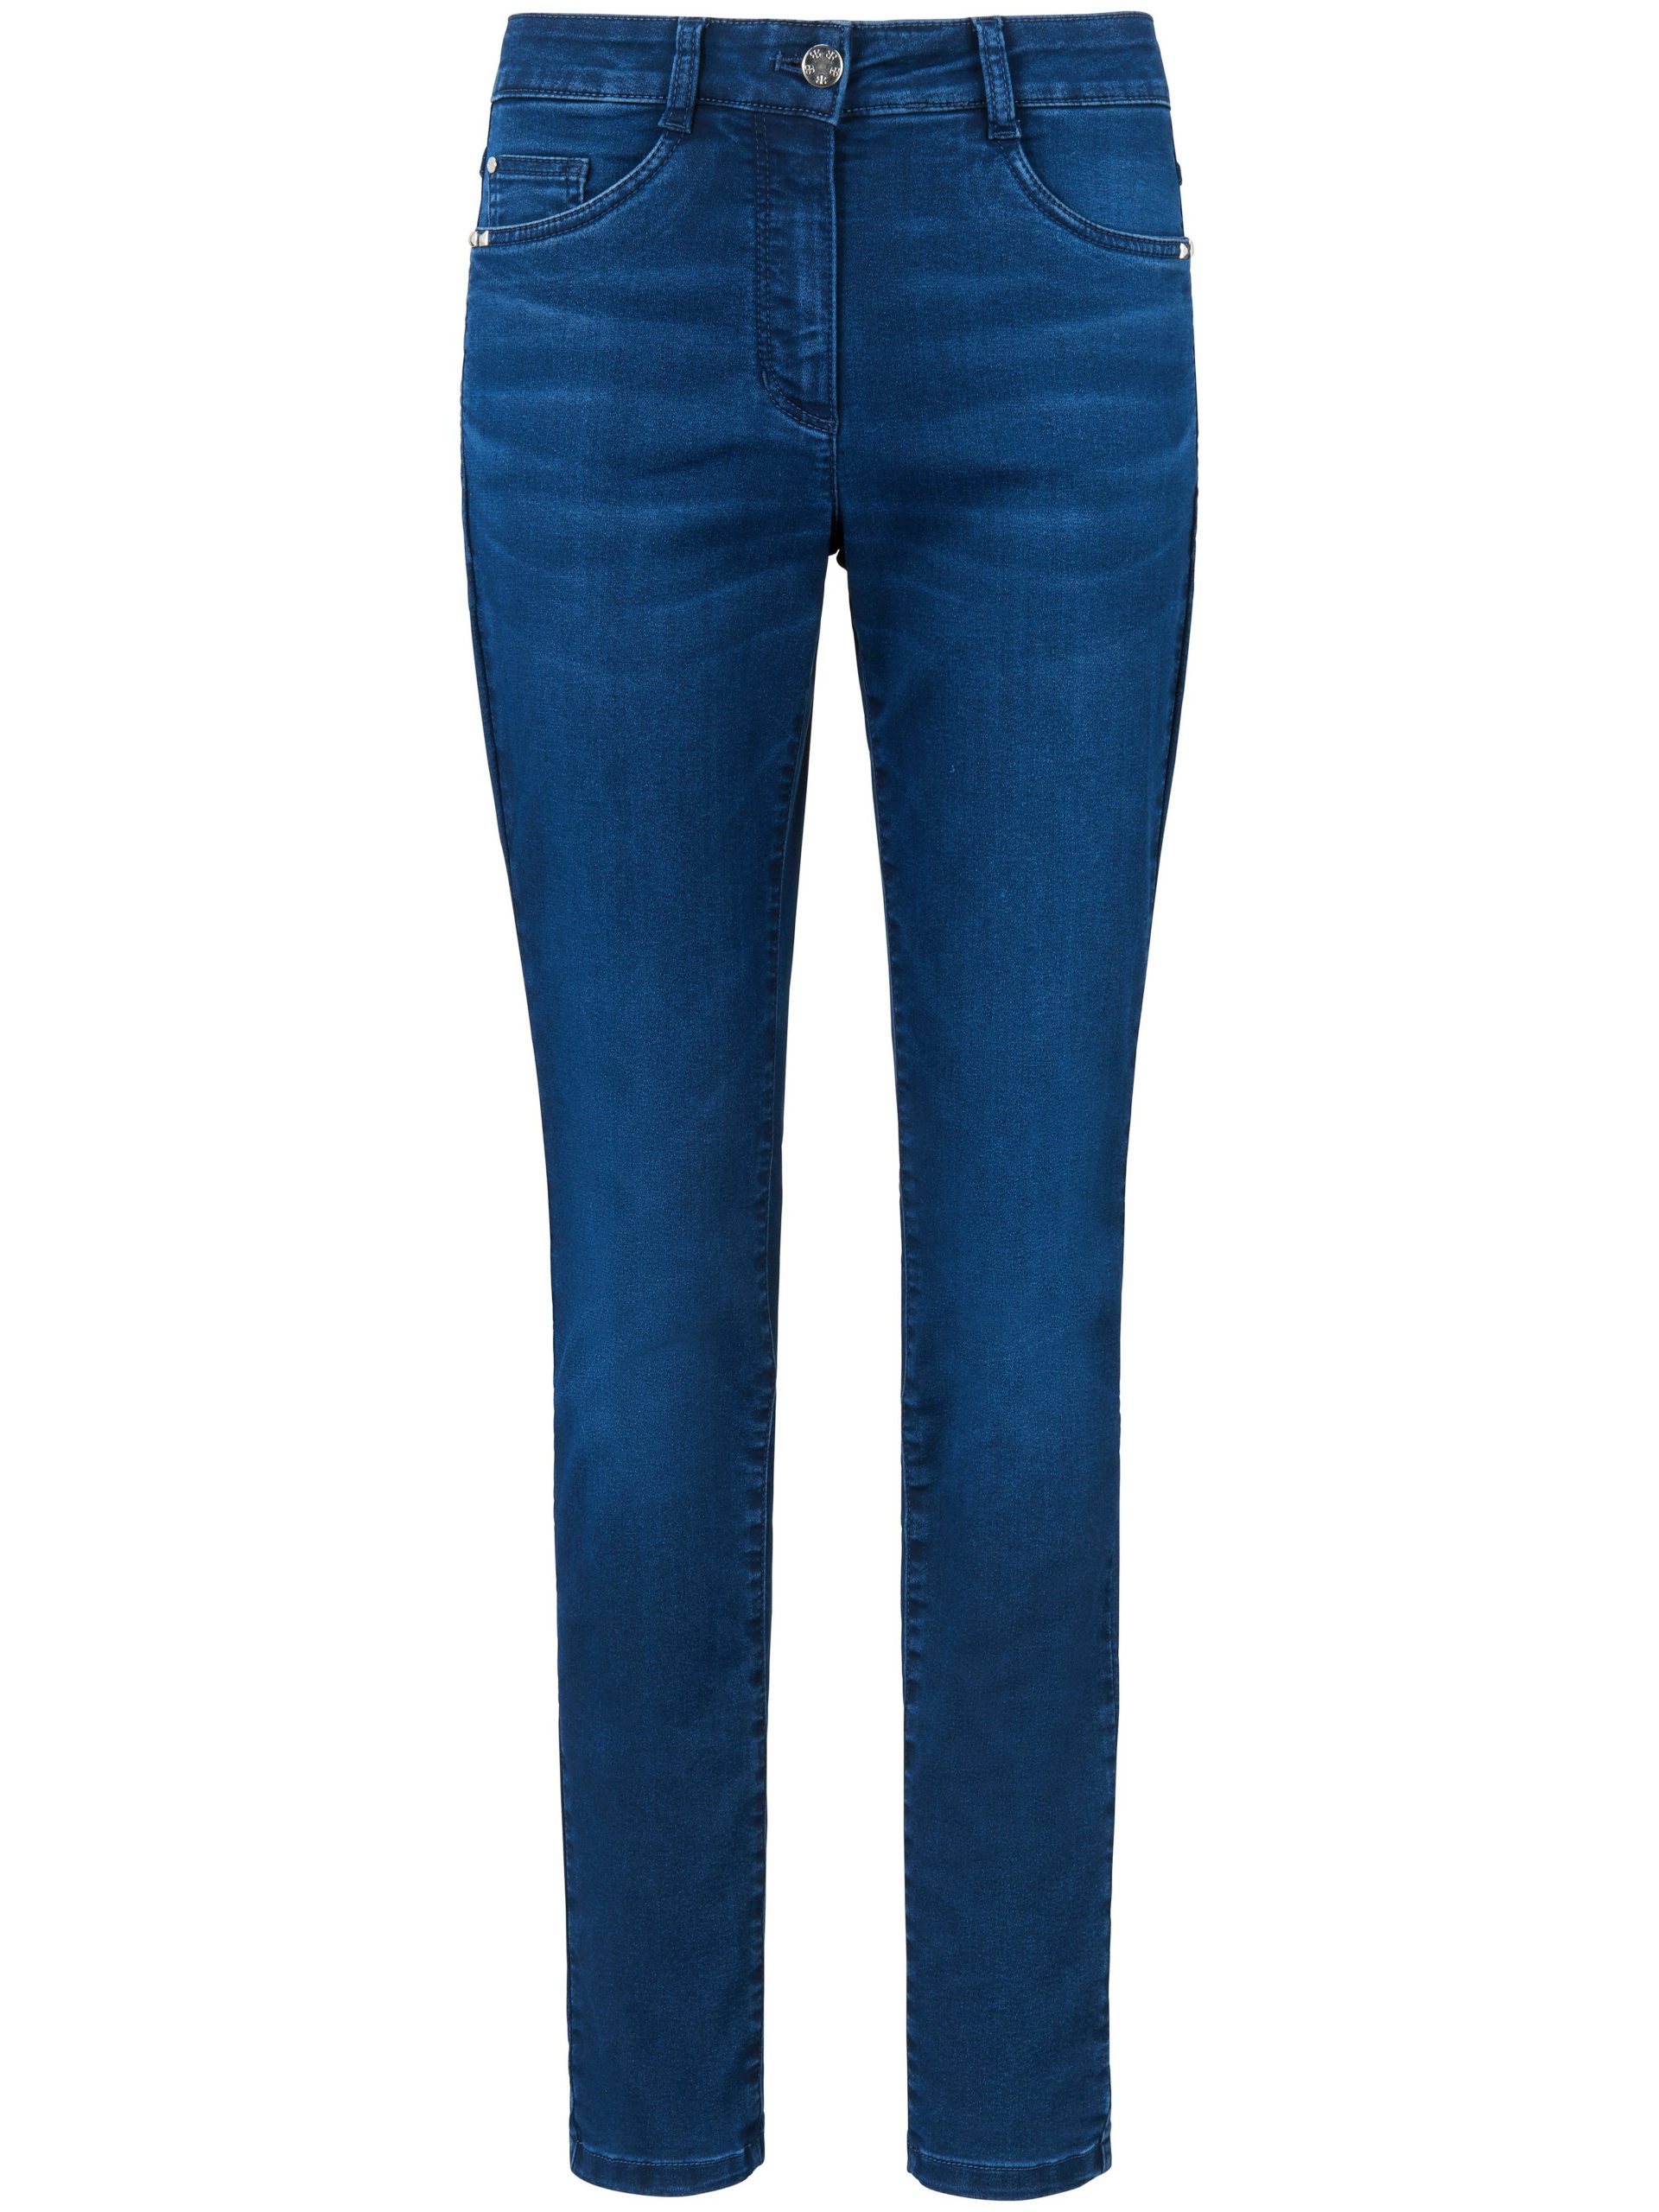 Jeans model Julienne met smalle pijpen Van Basler denim Kopen